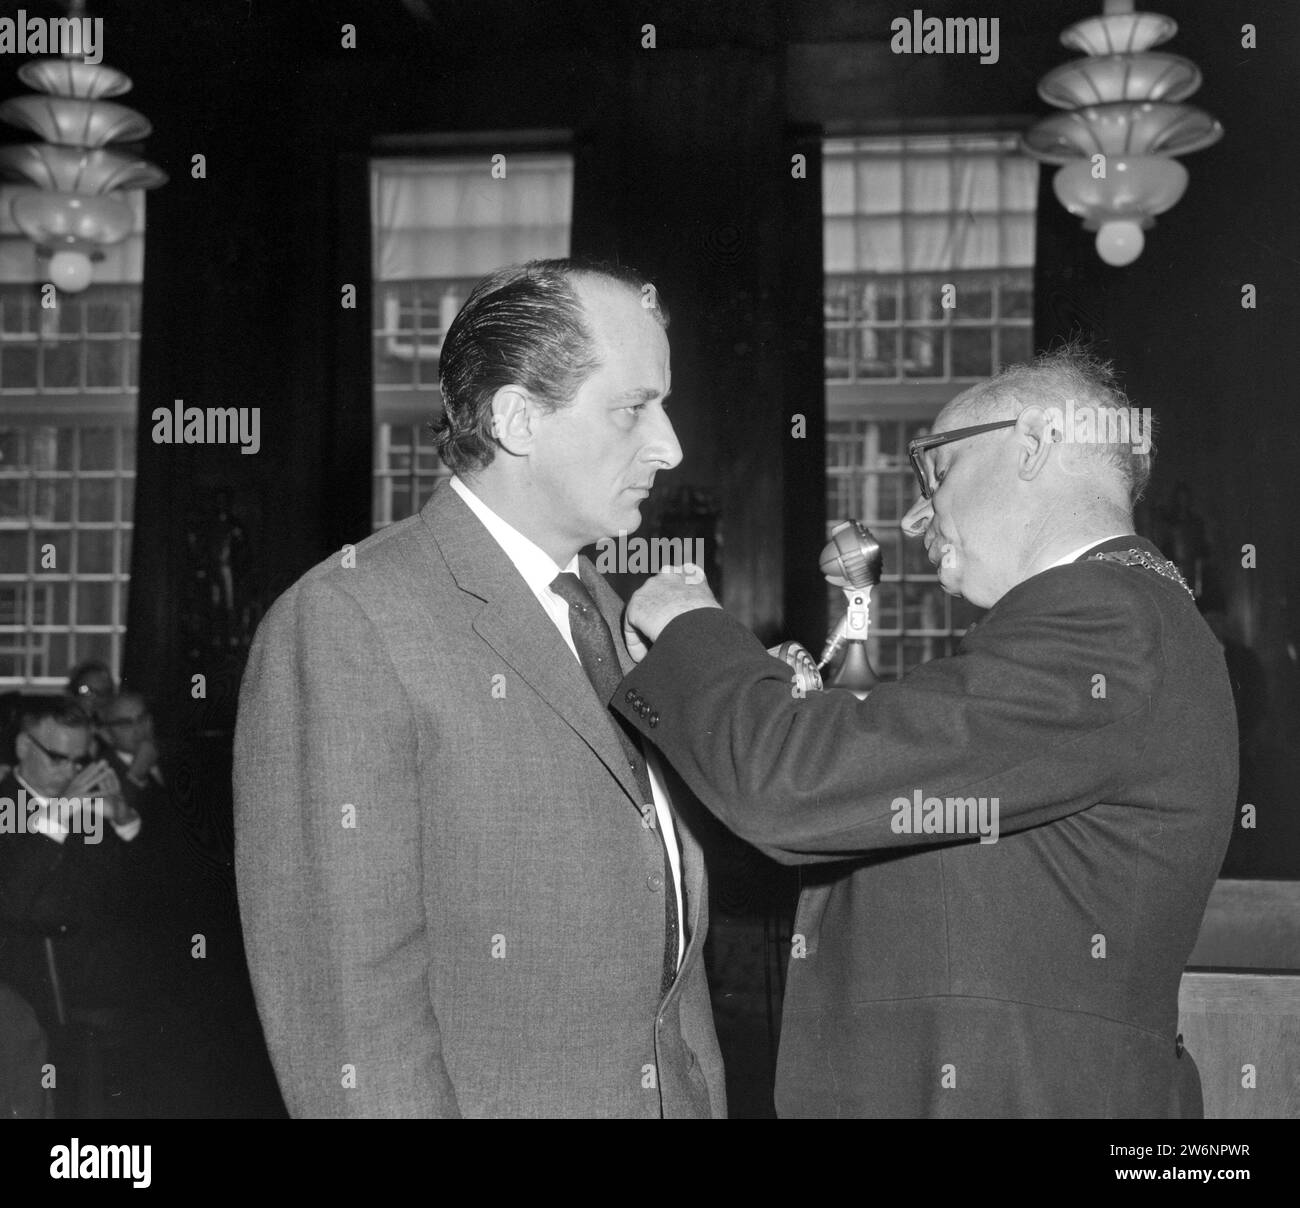 Cerimonia di premiazione reale, il vice sindaco Van Wijk assegna il premio ad A. C. M. Hermus CA. 29 aprile 1964 Foto Stock